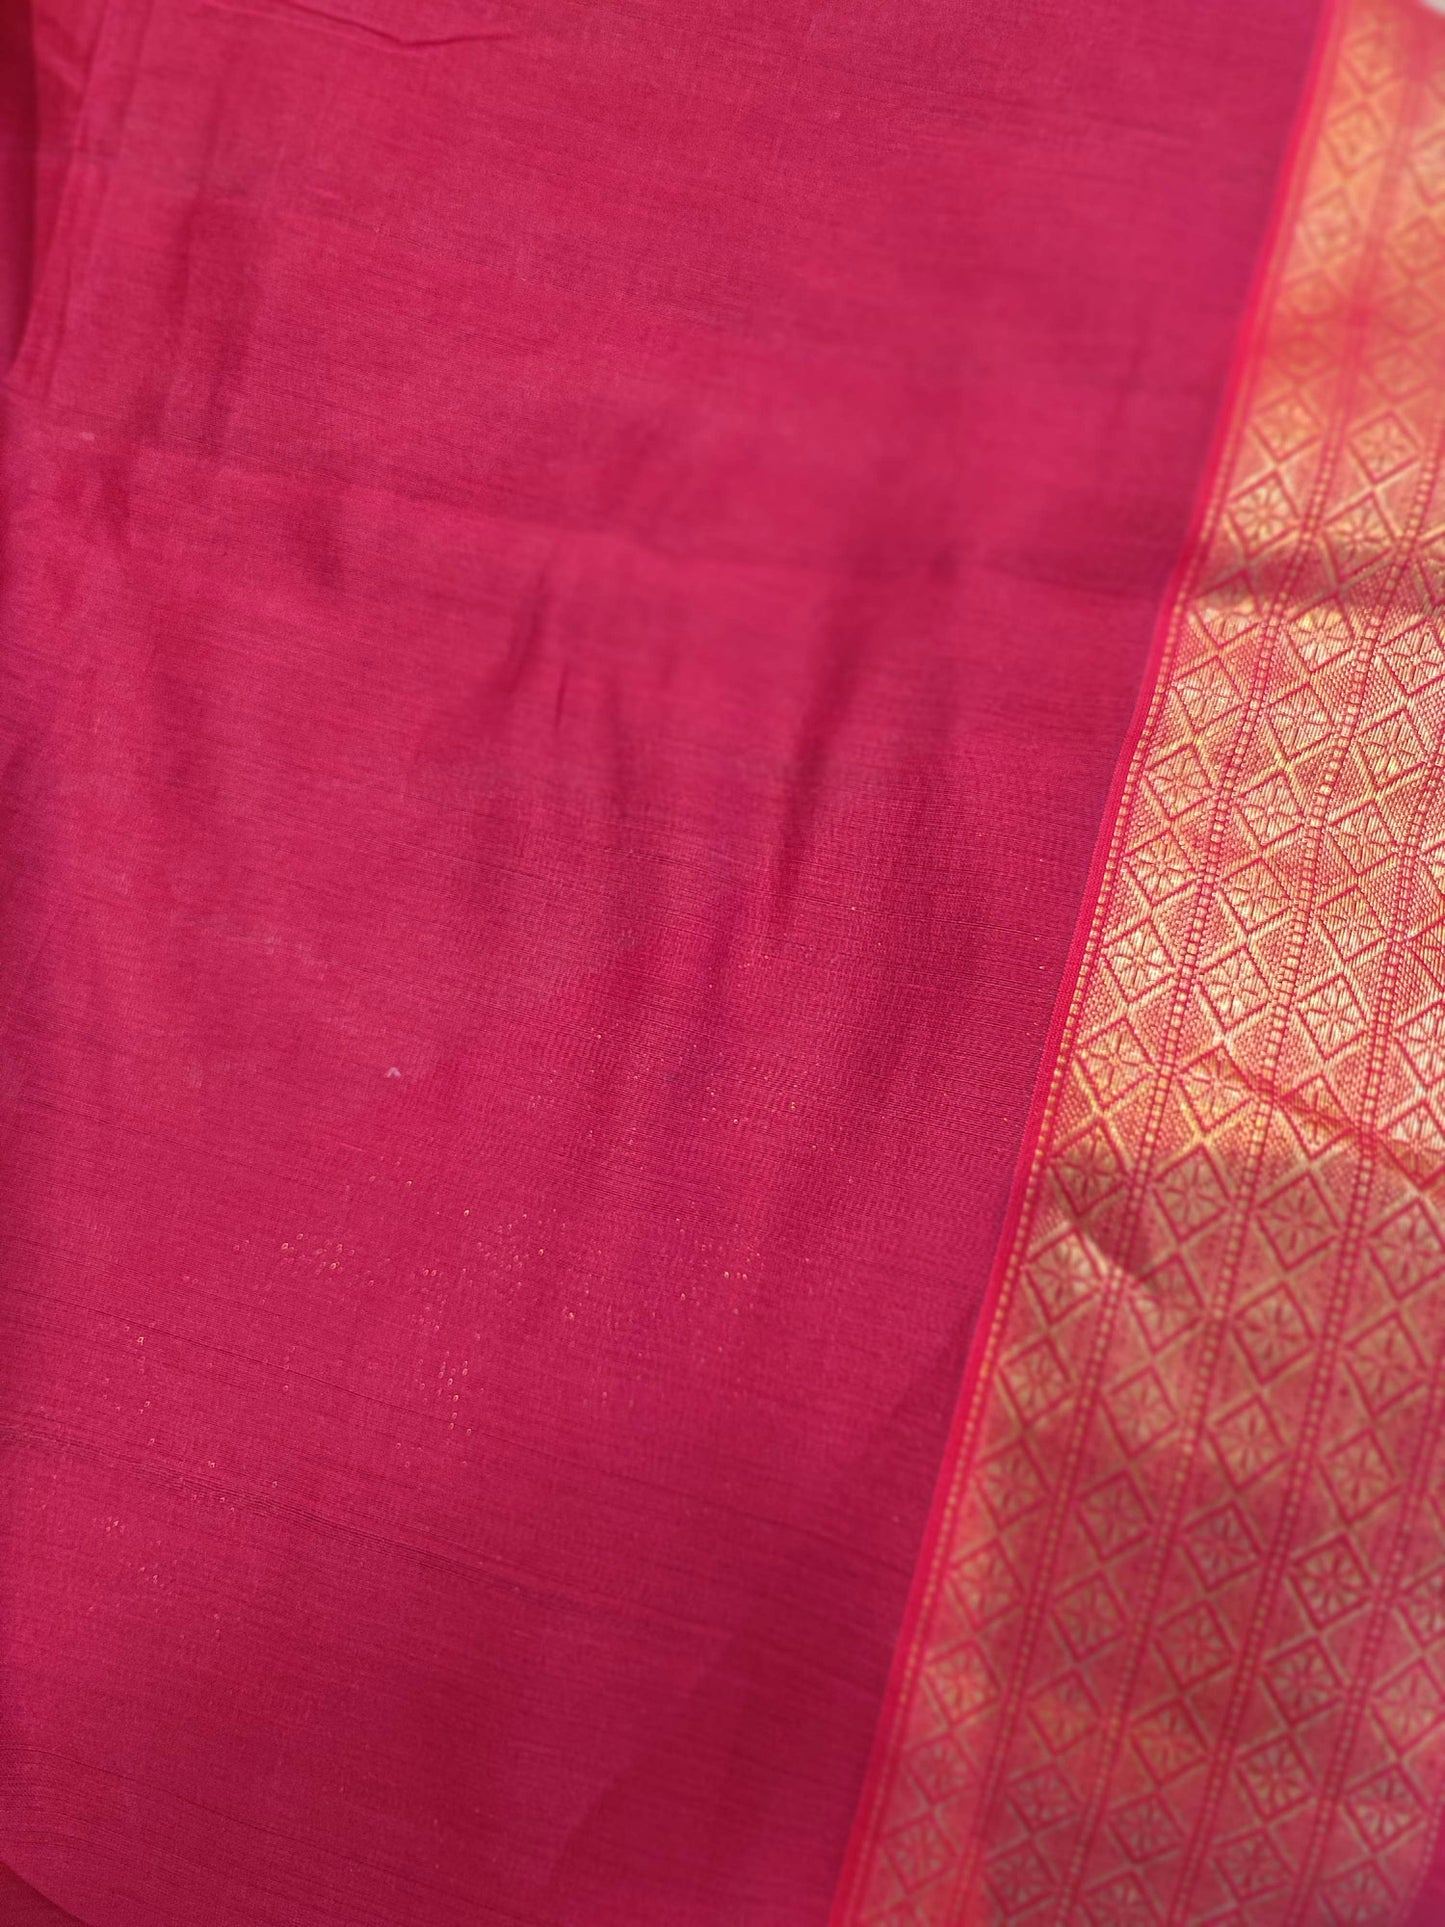 Crimson Maheshwari Silk Saree with Broad Zari Border